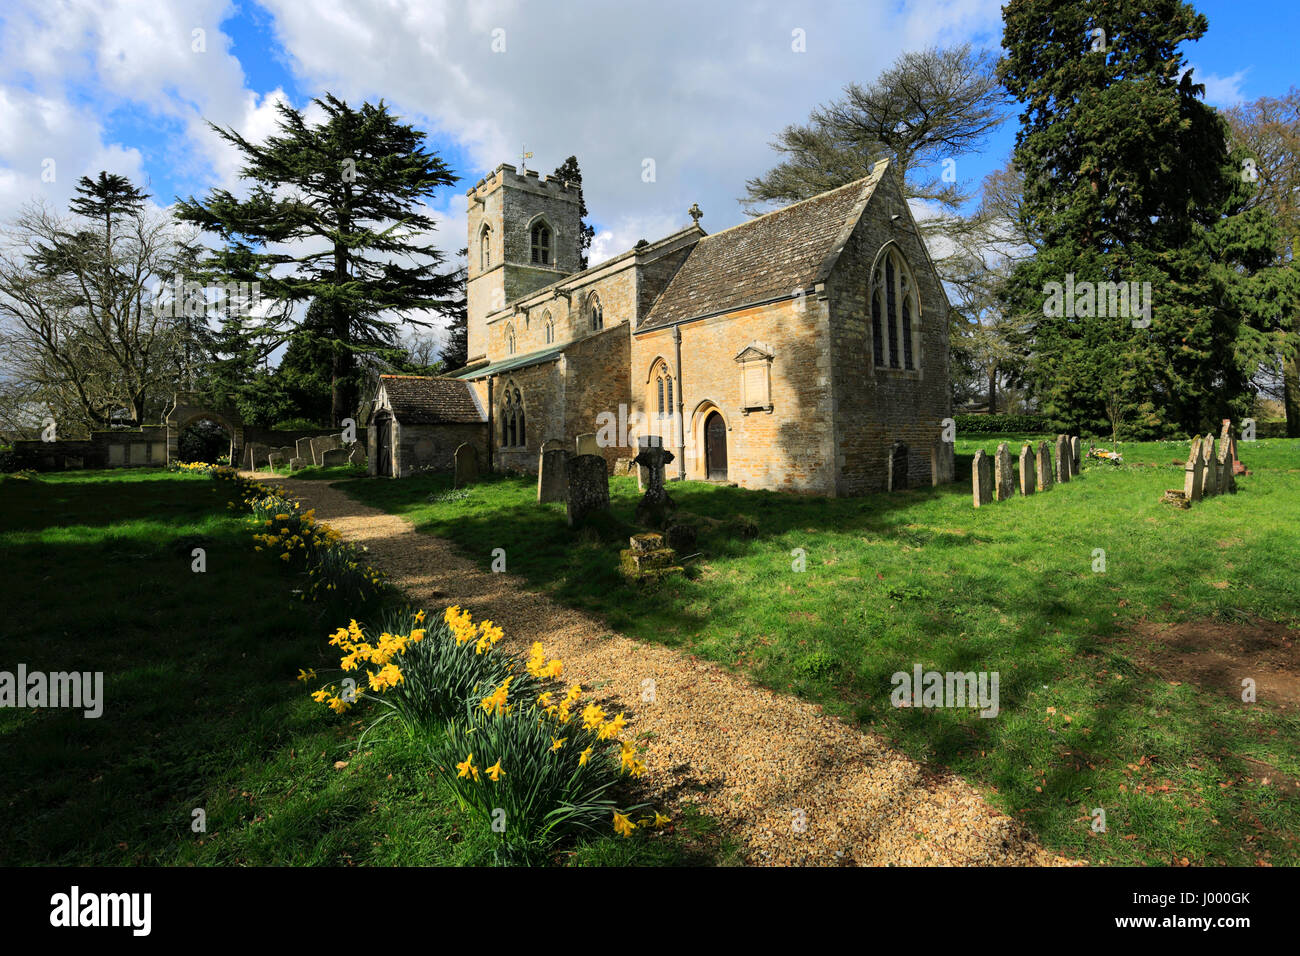 Molla, St Martins chiesa, lyndon village, Rutland, Rutland County, England, Regno Unito Foto Stock